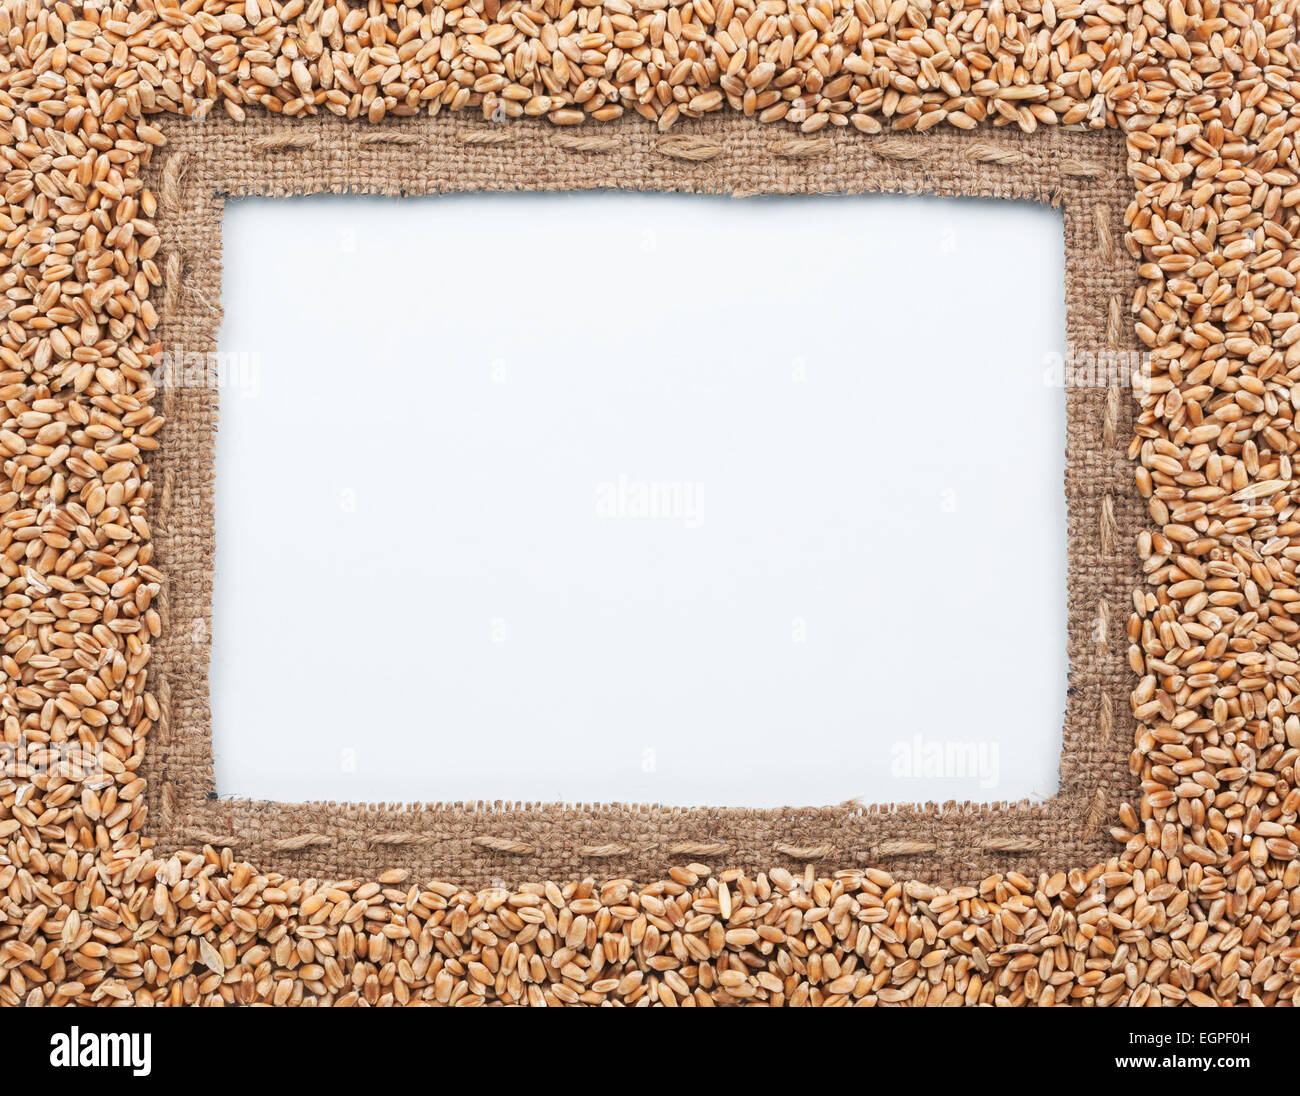 Rahmen aus Sackleinen und Weizen Bohnen, liegend auf einem weißen Hintergrund Stockfoto